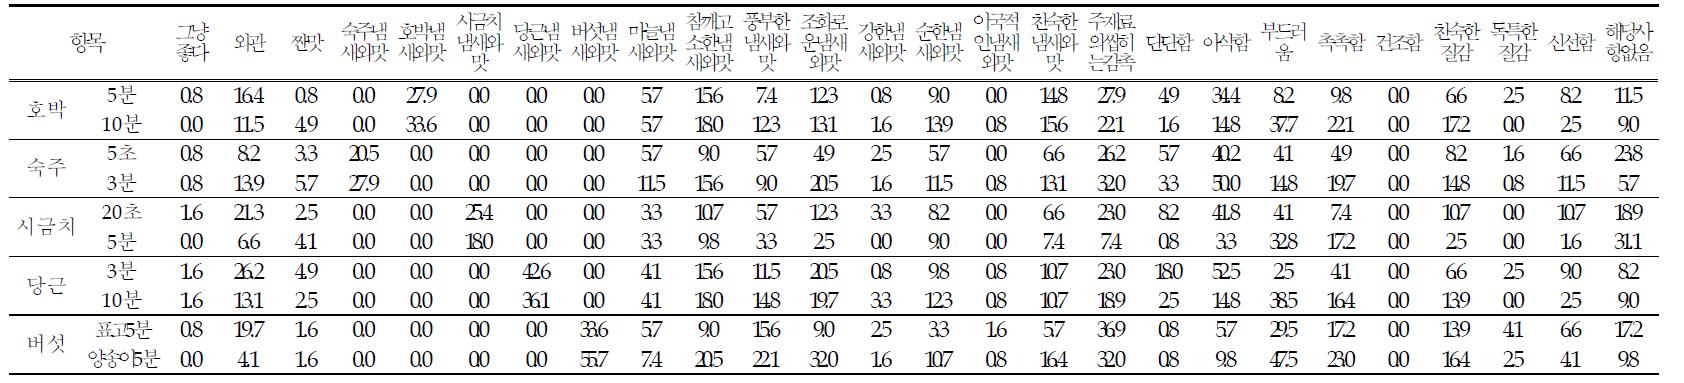 한국인이 평가한 나물 6종에 대한 장점 비율